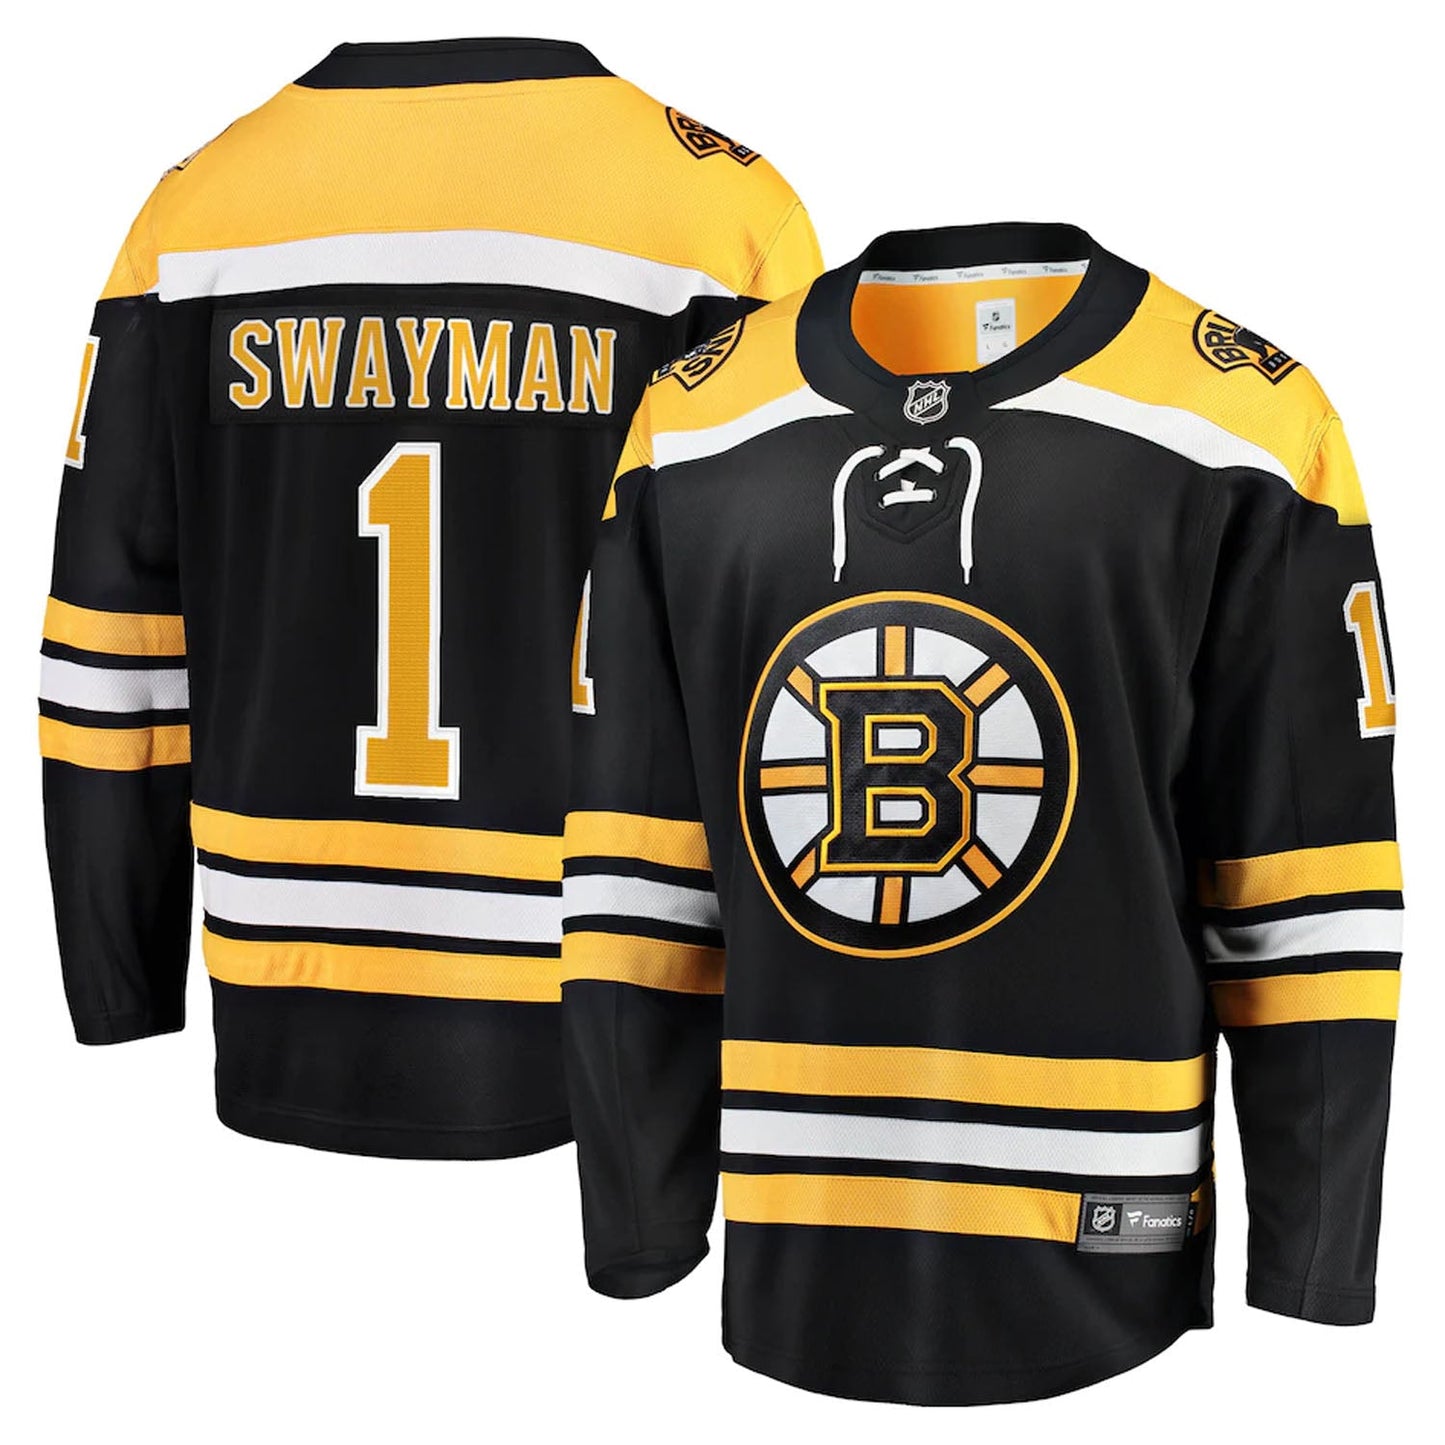 NHL Jeremy Swayman Boston Bruins 1 Jersey